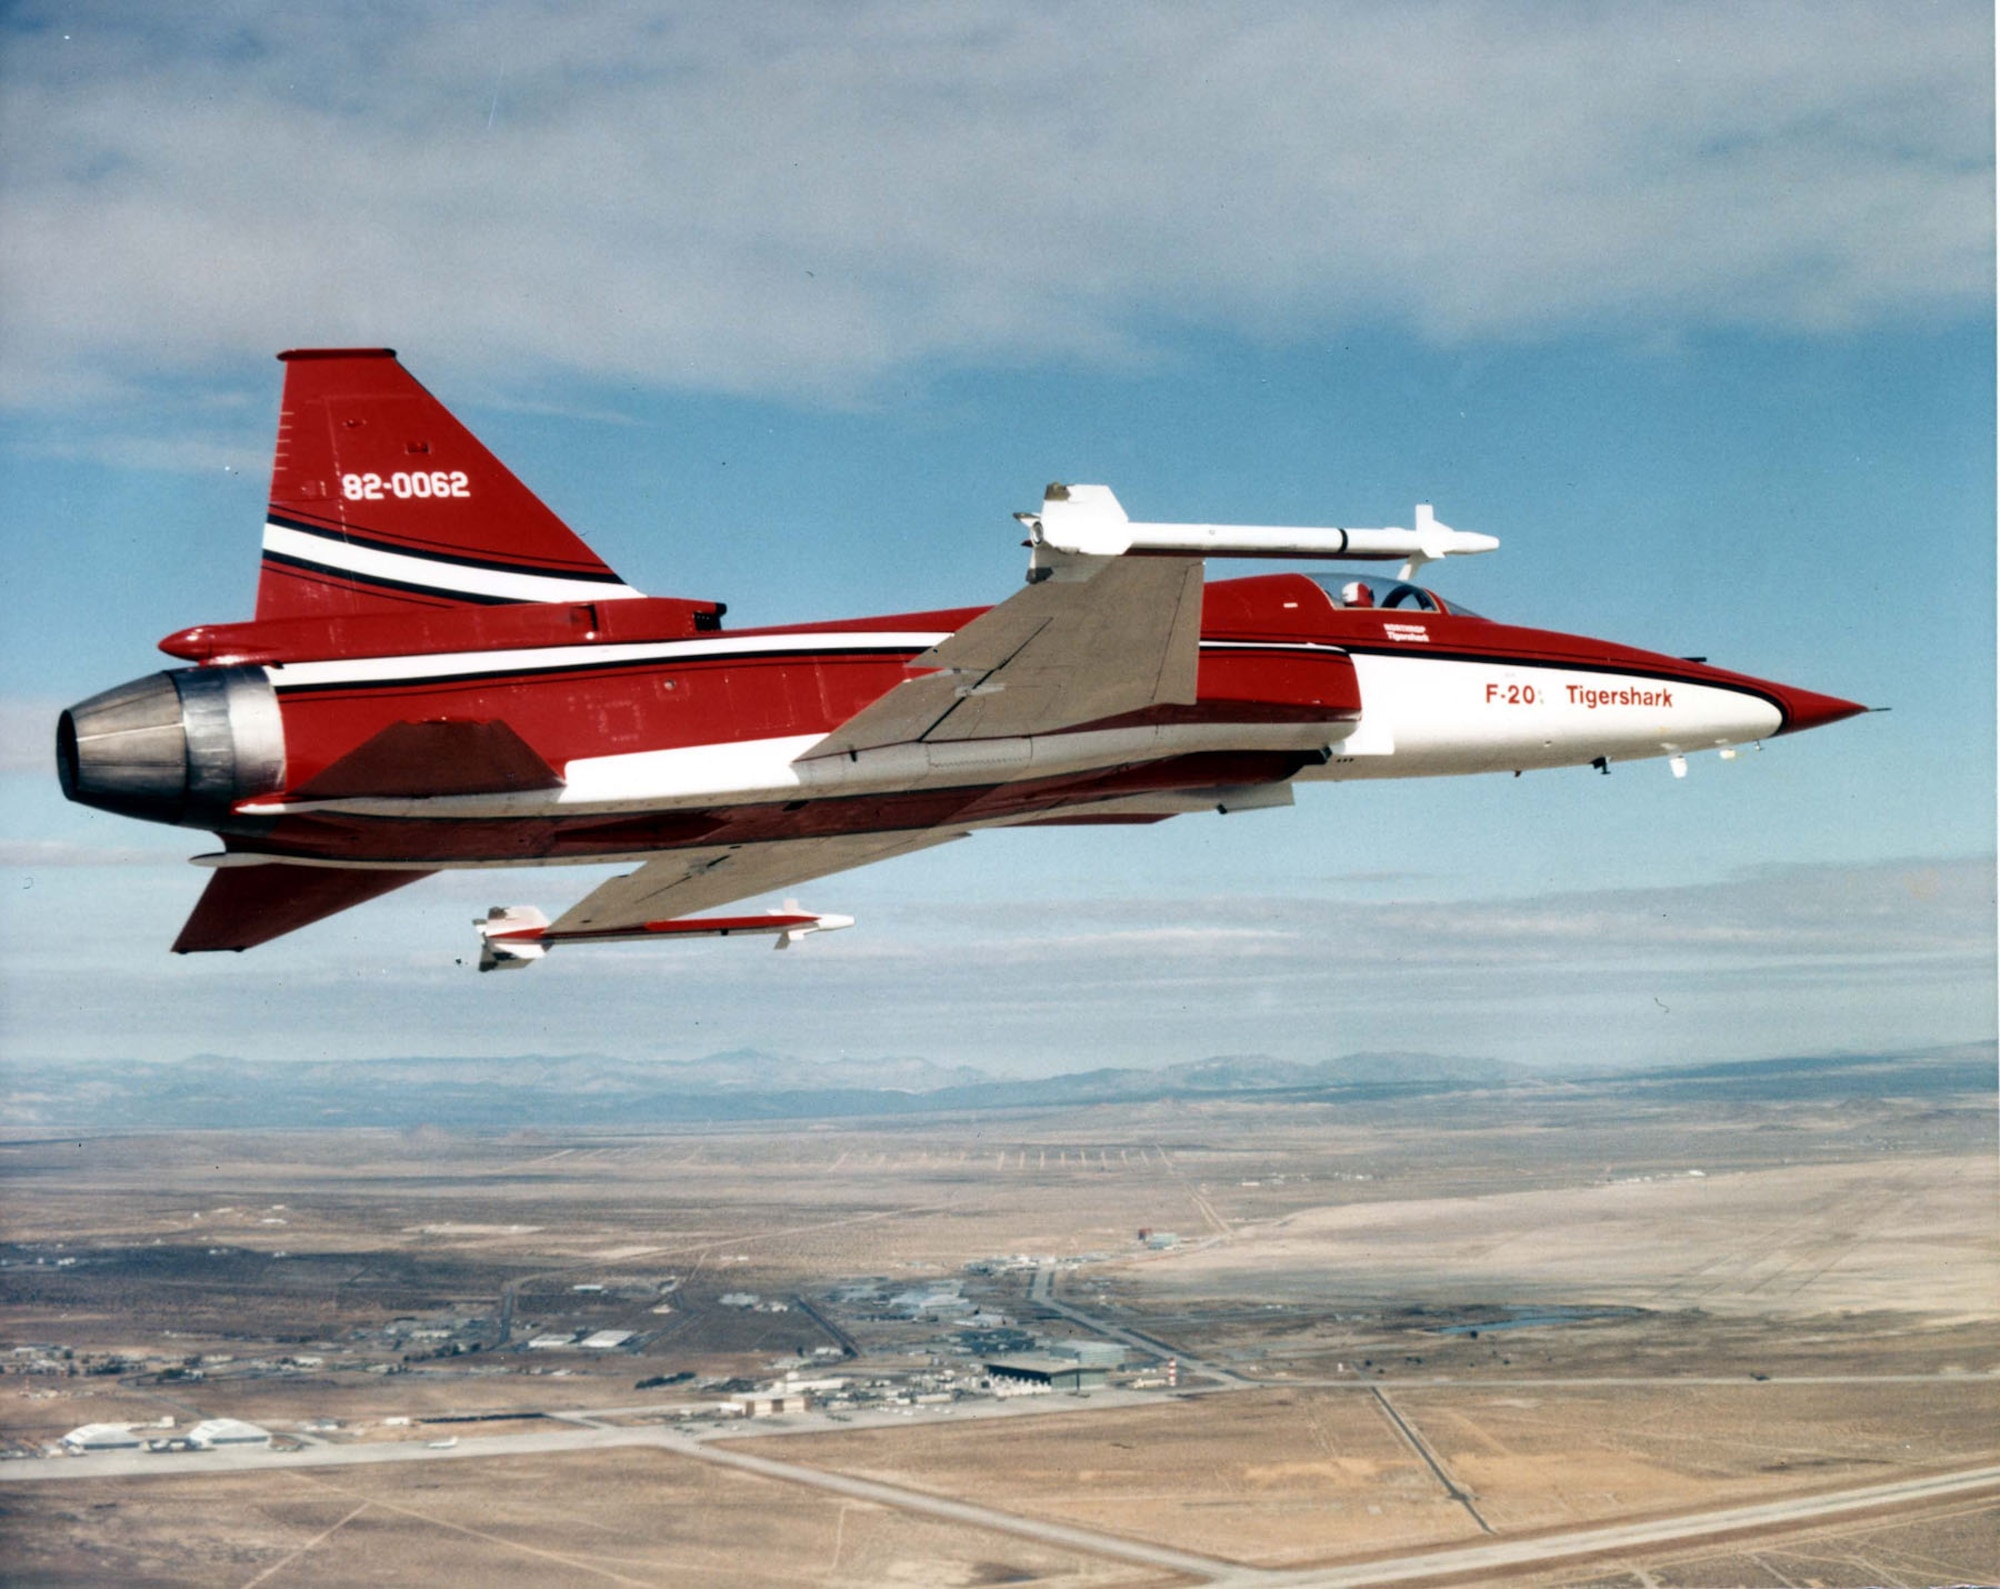 Northrop F-20 (S/N 82-0062) in flight. (U.S. Air Force photo)